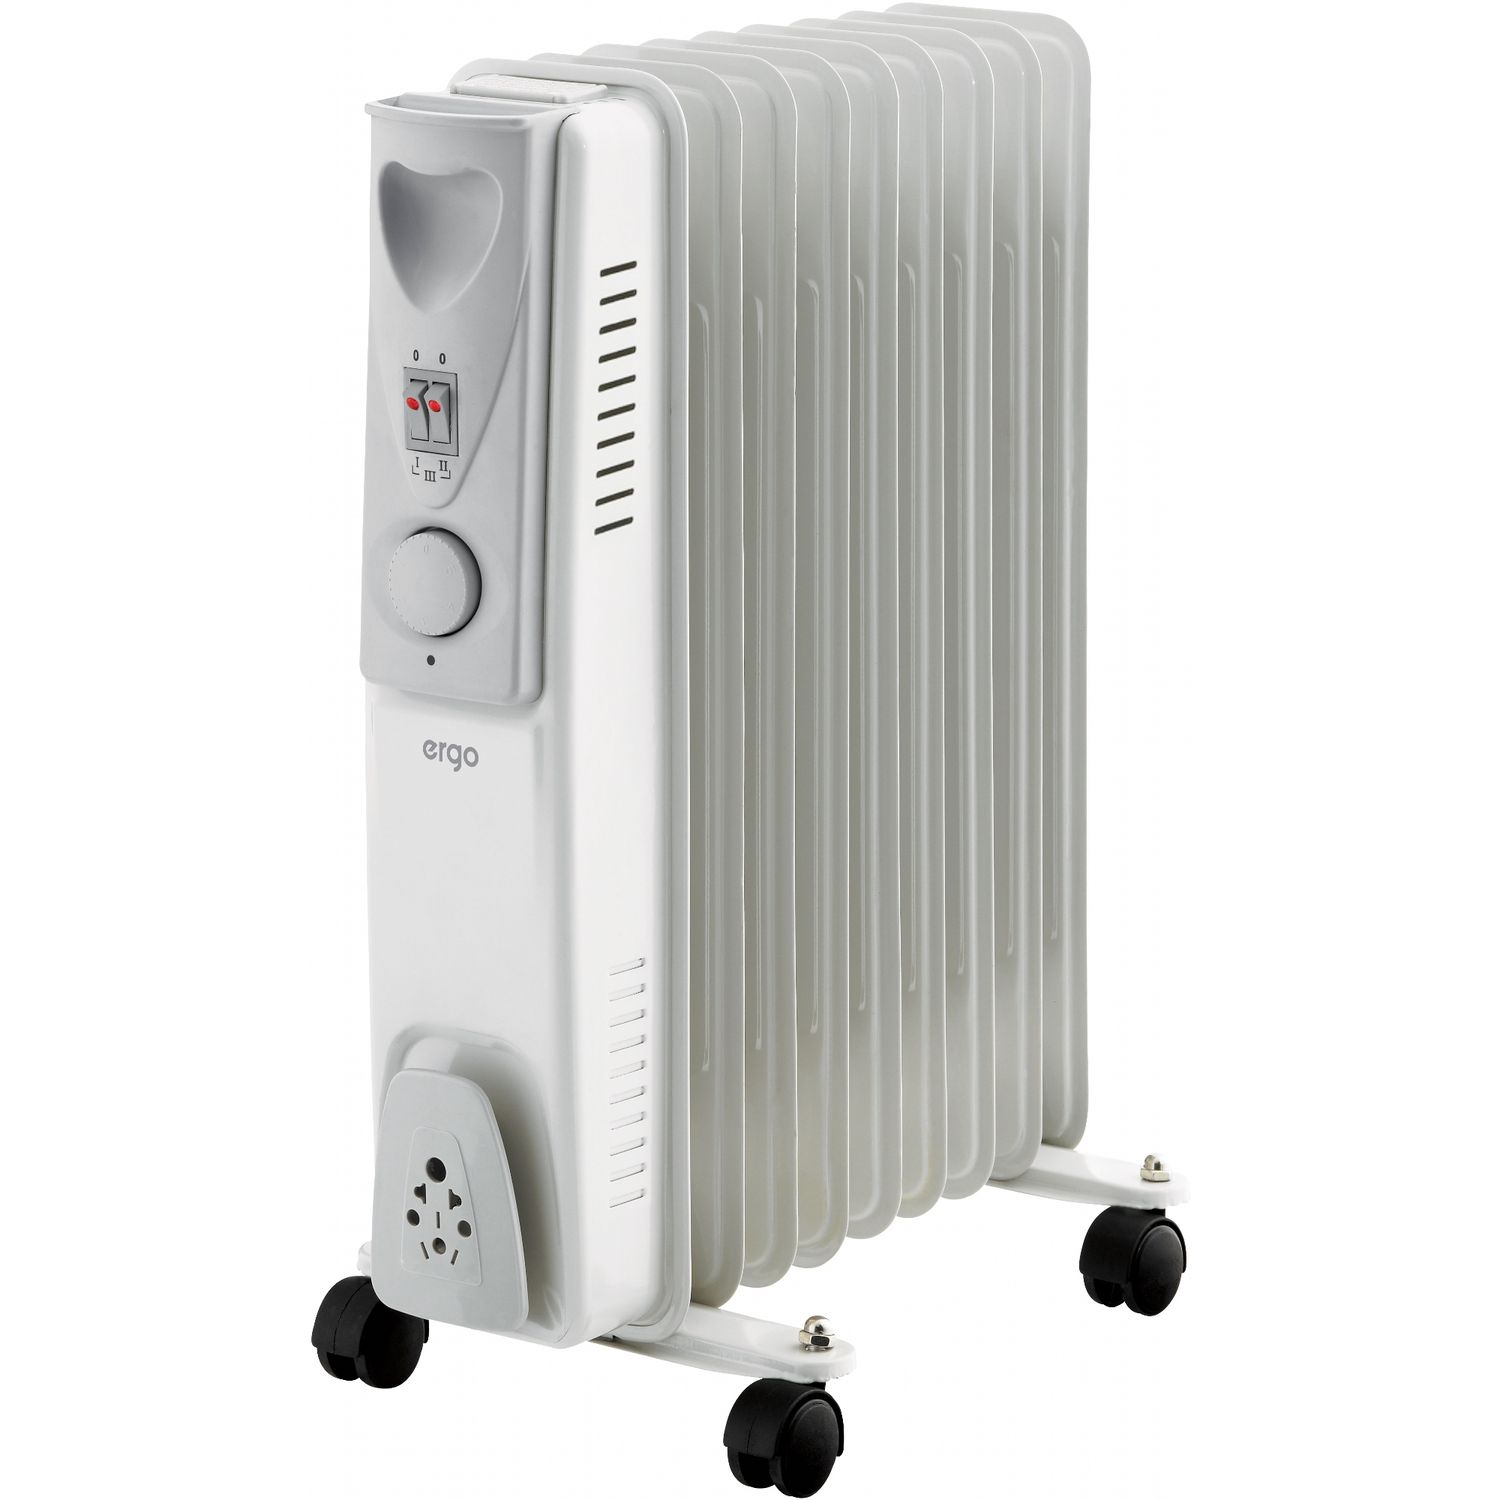 Обогреватели тула купить. Масляный радиатор Wwq rm03-1507. Масляный радиатор Home element he-oh1245. Масляный радиатор Wwq rm03-2511. Масляный радиатор Home element he-oh1240.